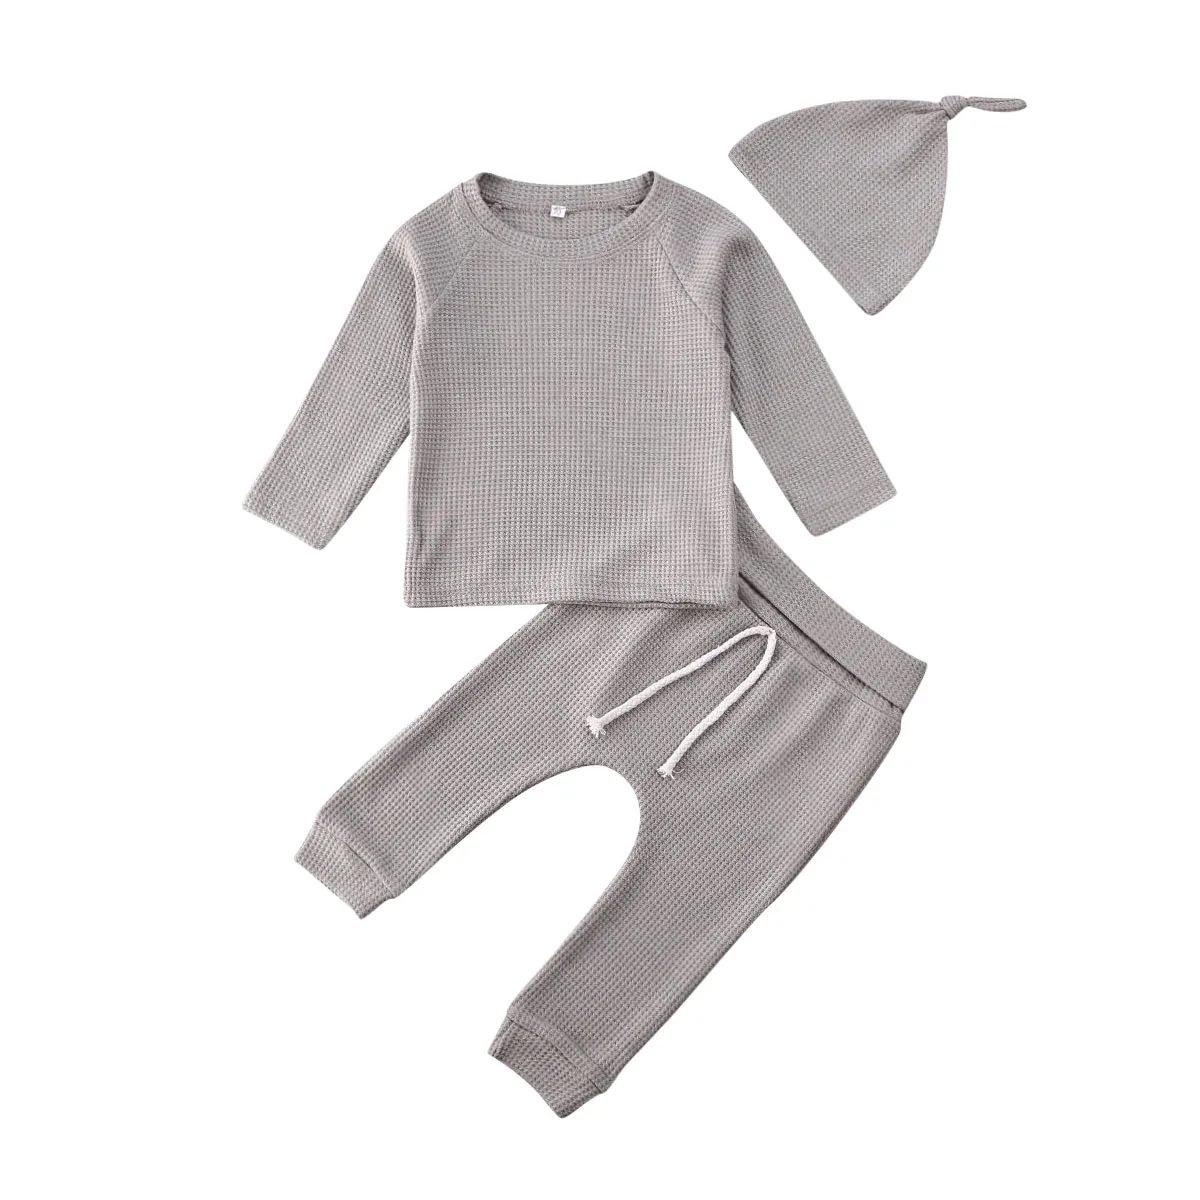 Одежда для сна для маленьких девочек от 0 до 24 месяцев, комплект одежды, топы с длинными рукавами, длинные штаны шляпа, наряды комплект из 3 предметов, 5 цветов - Цвет: Серый